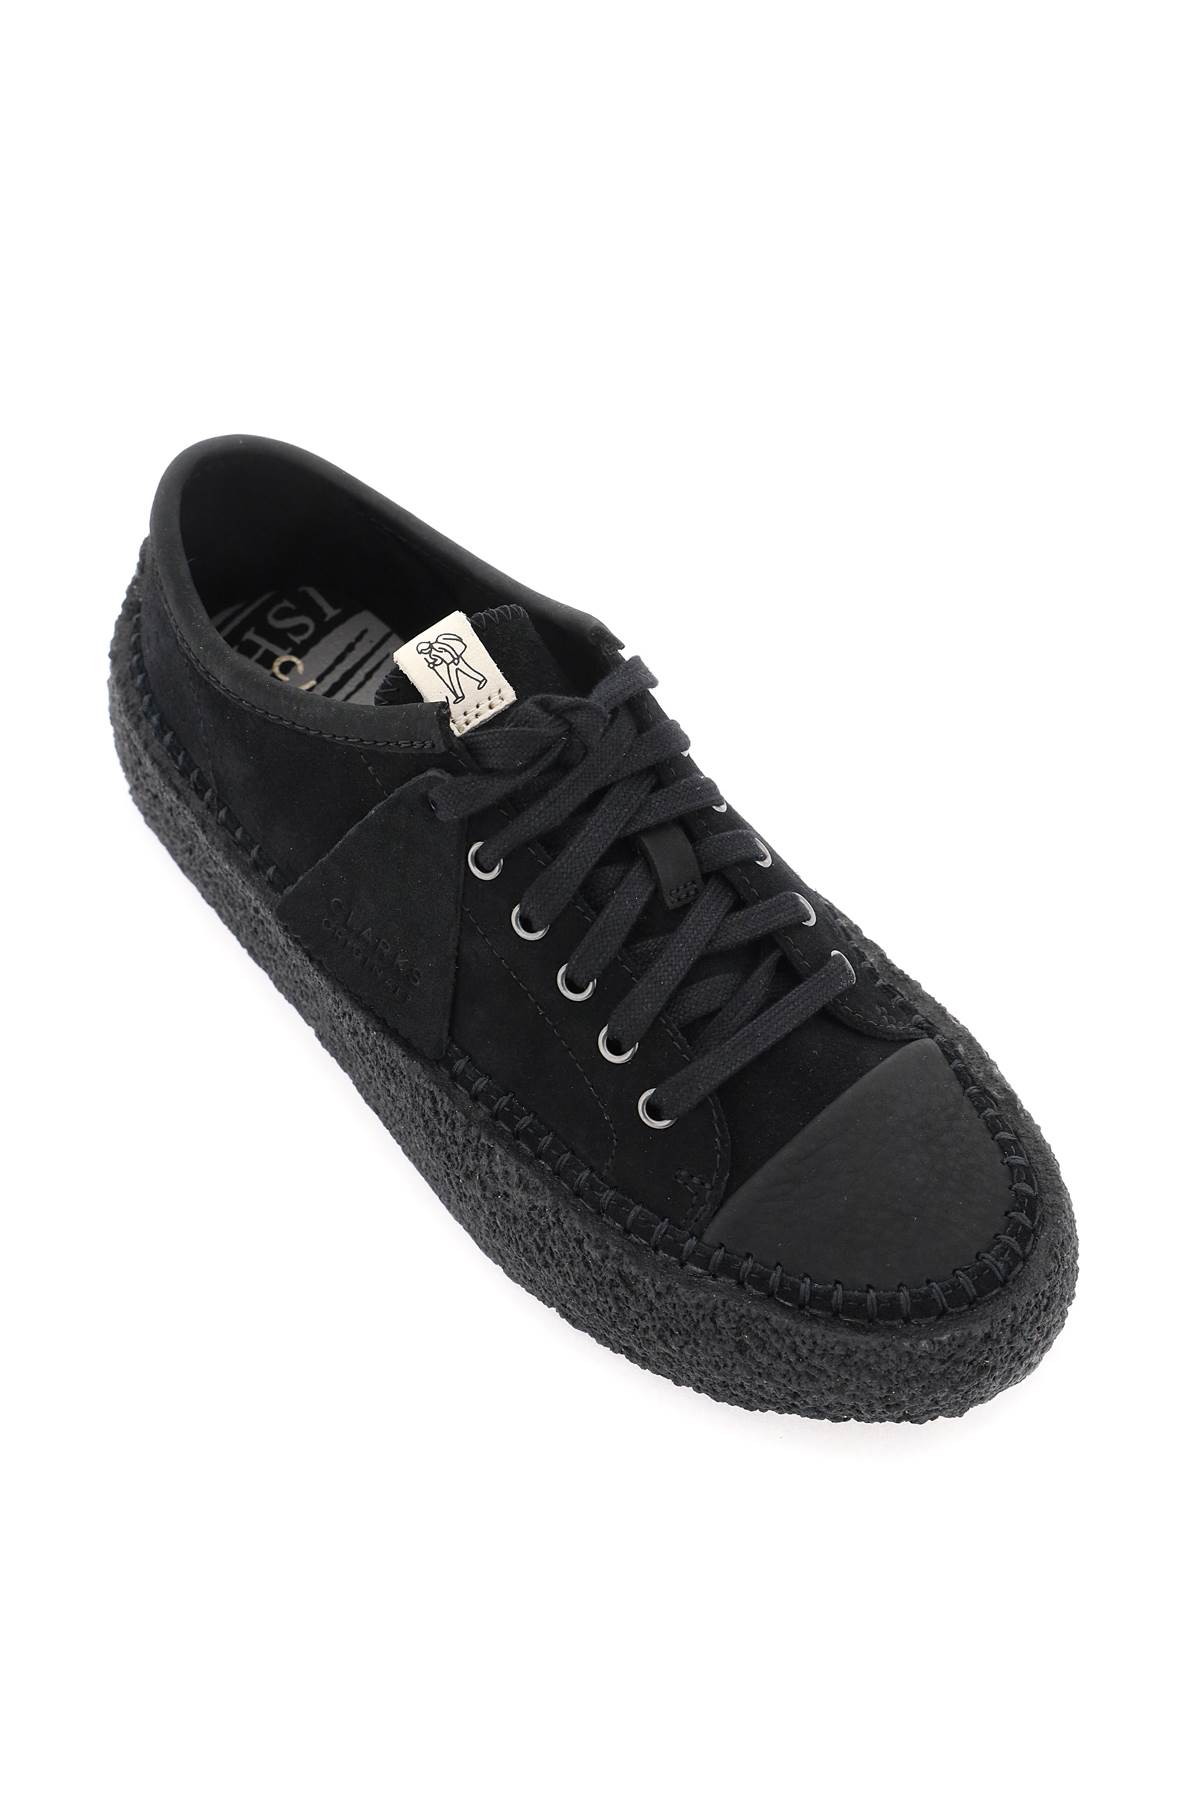 Shop Clarks Suede Leather Caravan Sneakers In Black (black)